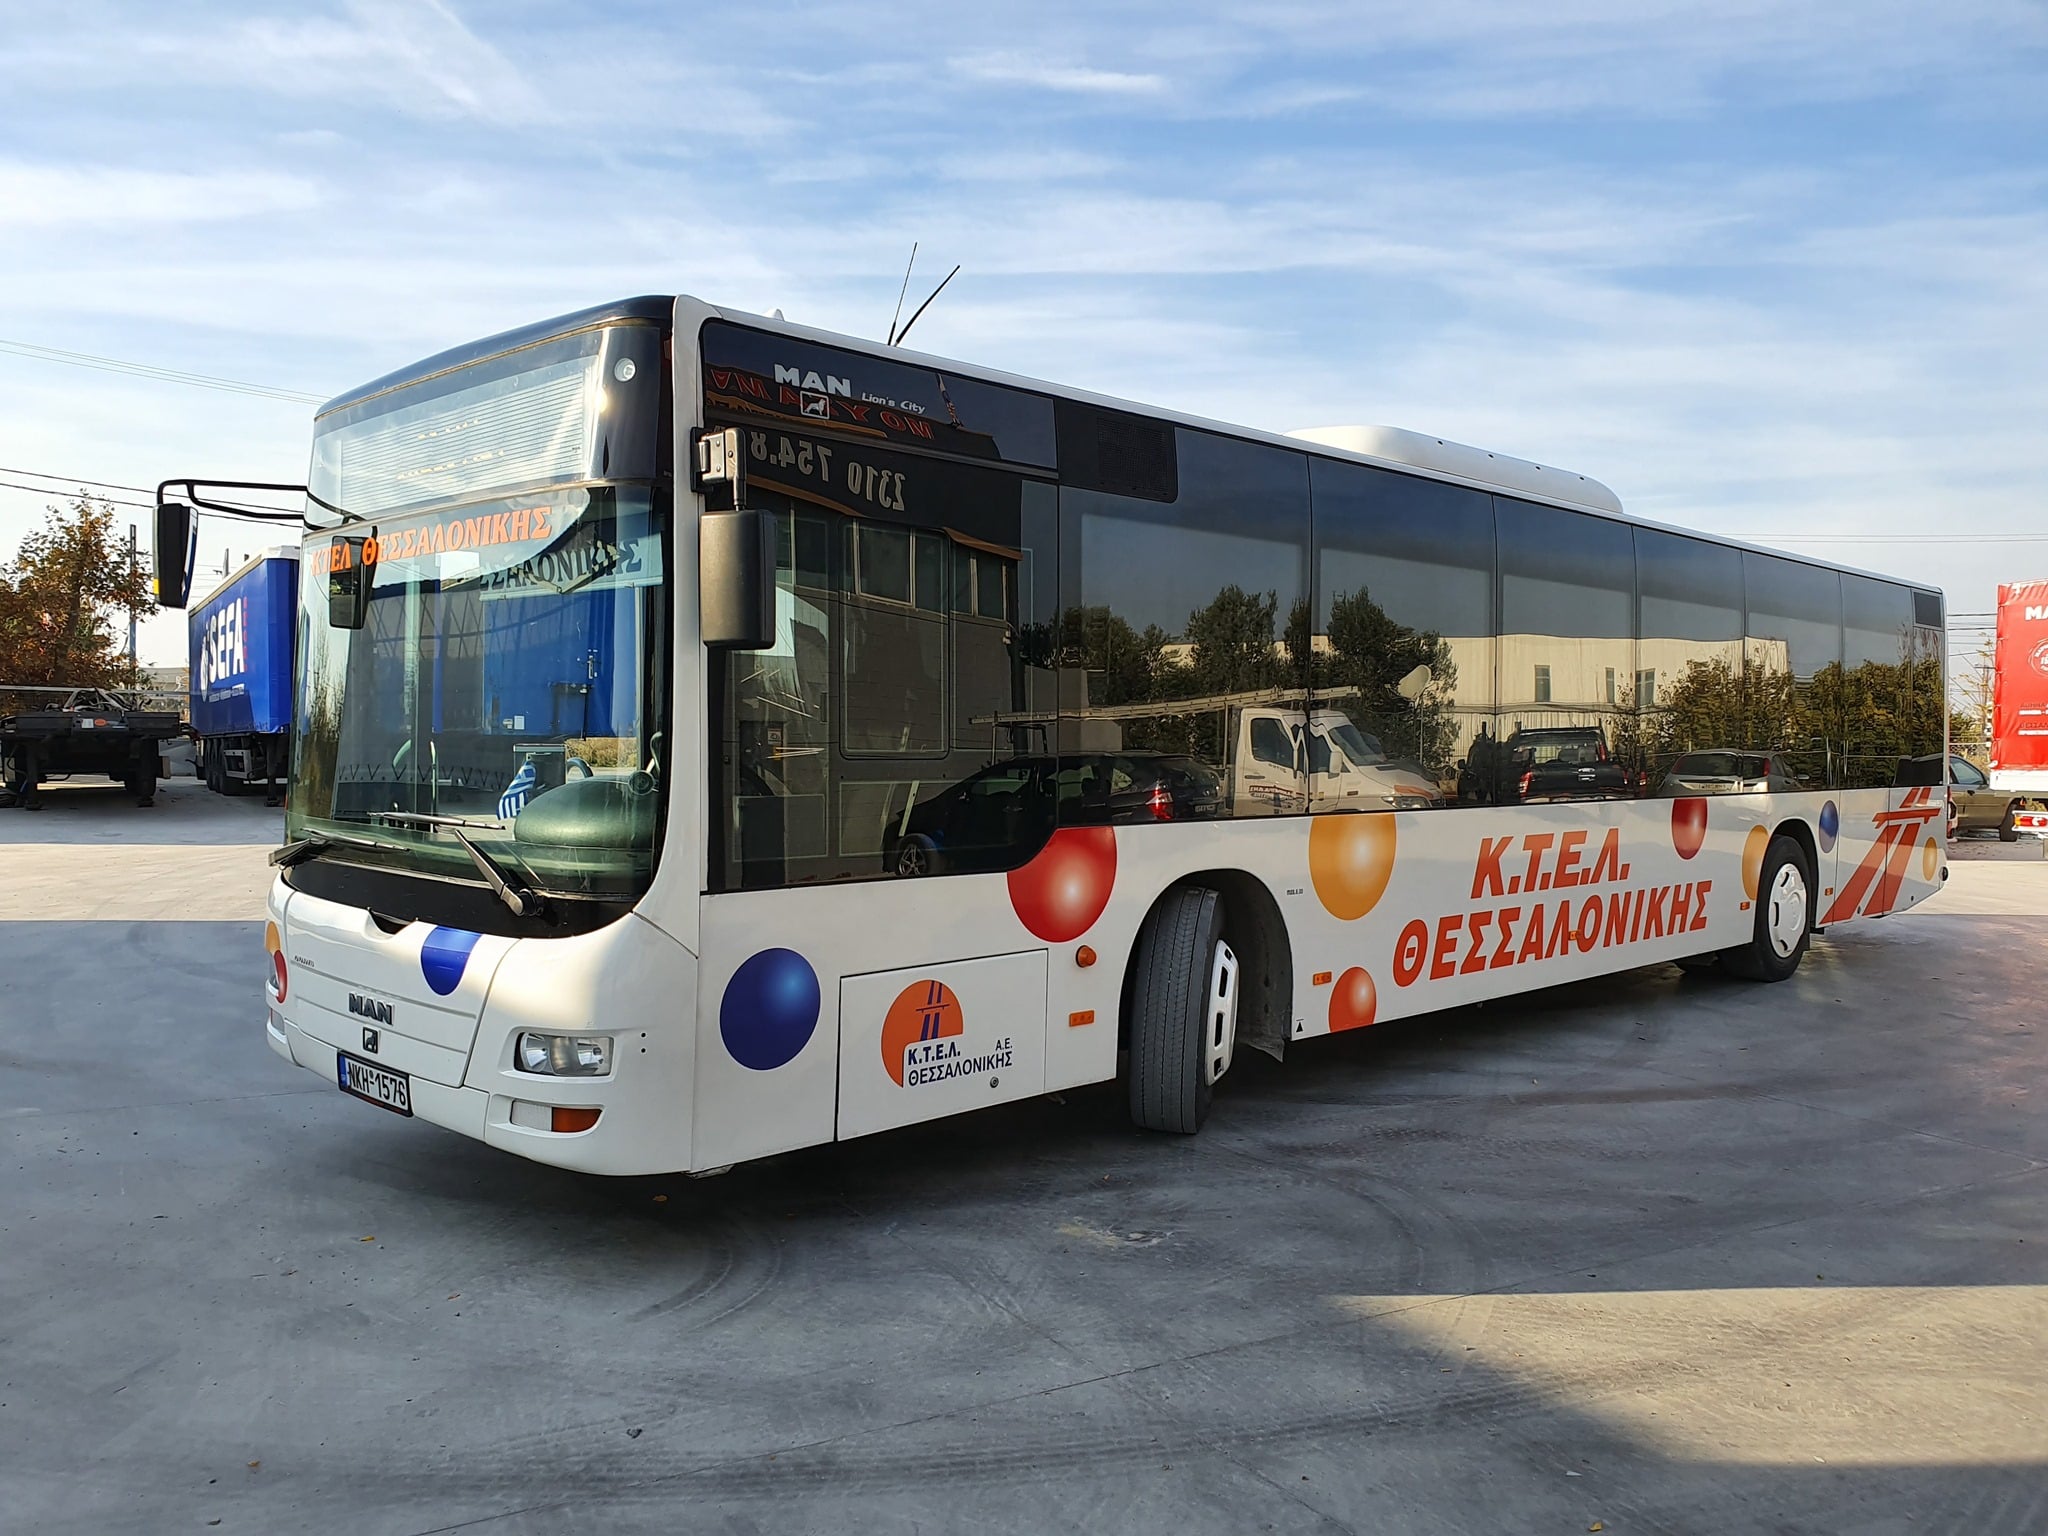 Θεσσαλονίκη: Πανικόβλητοι επιβάτες λεωφορείου βγήκαν από το παράθυρο όταν ακινητοποιήθηκε το όχημα